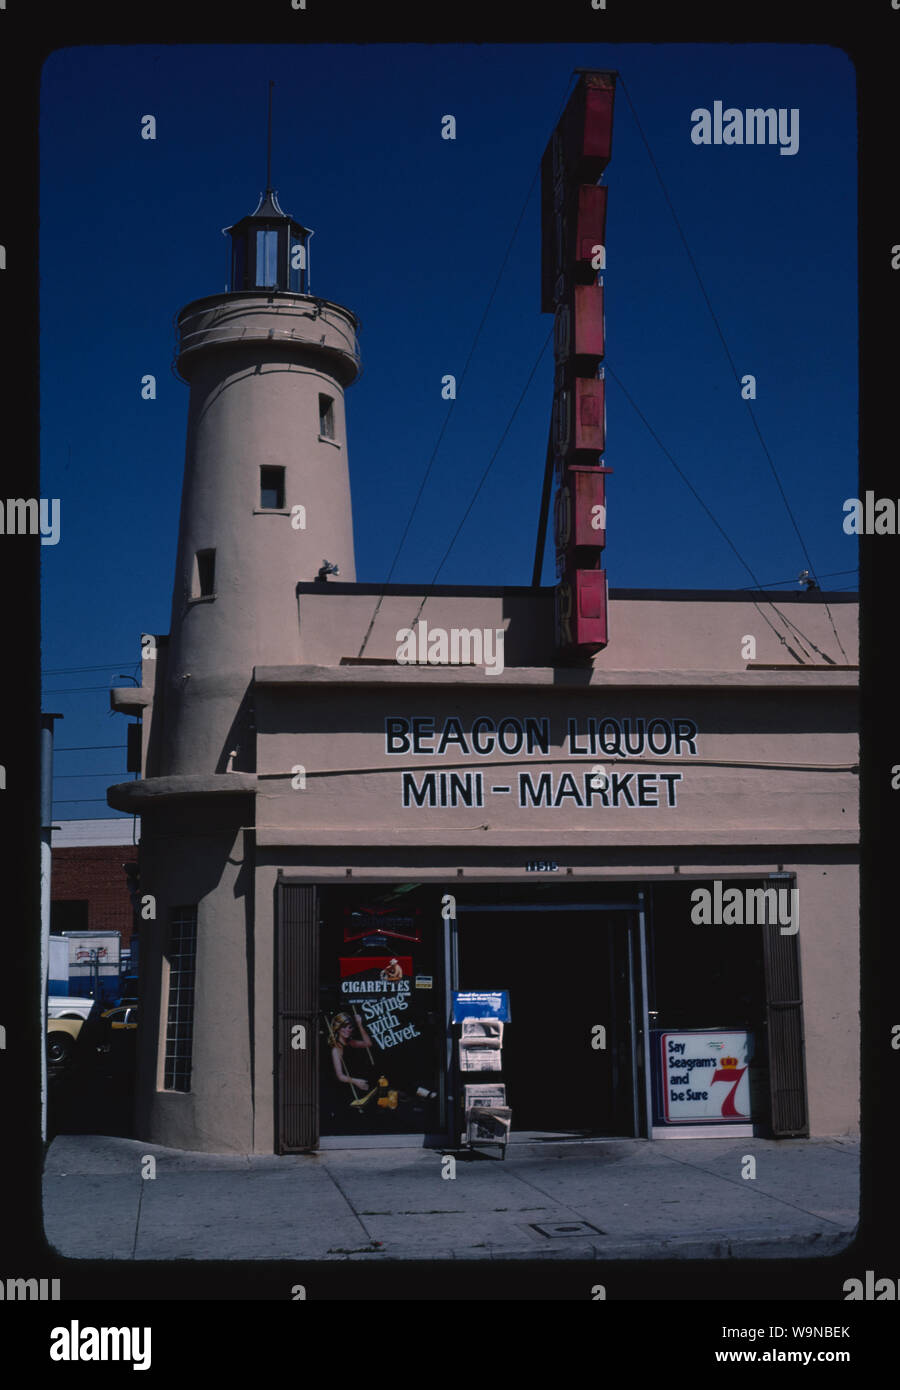 Beacon Liquors, West Los Angeles, California Stock Photo